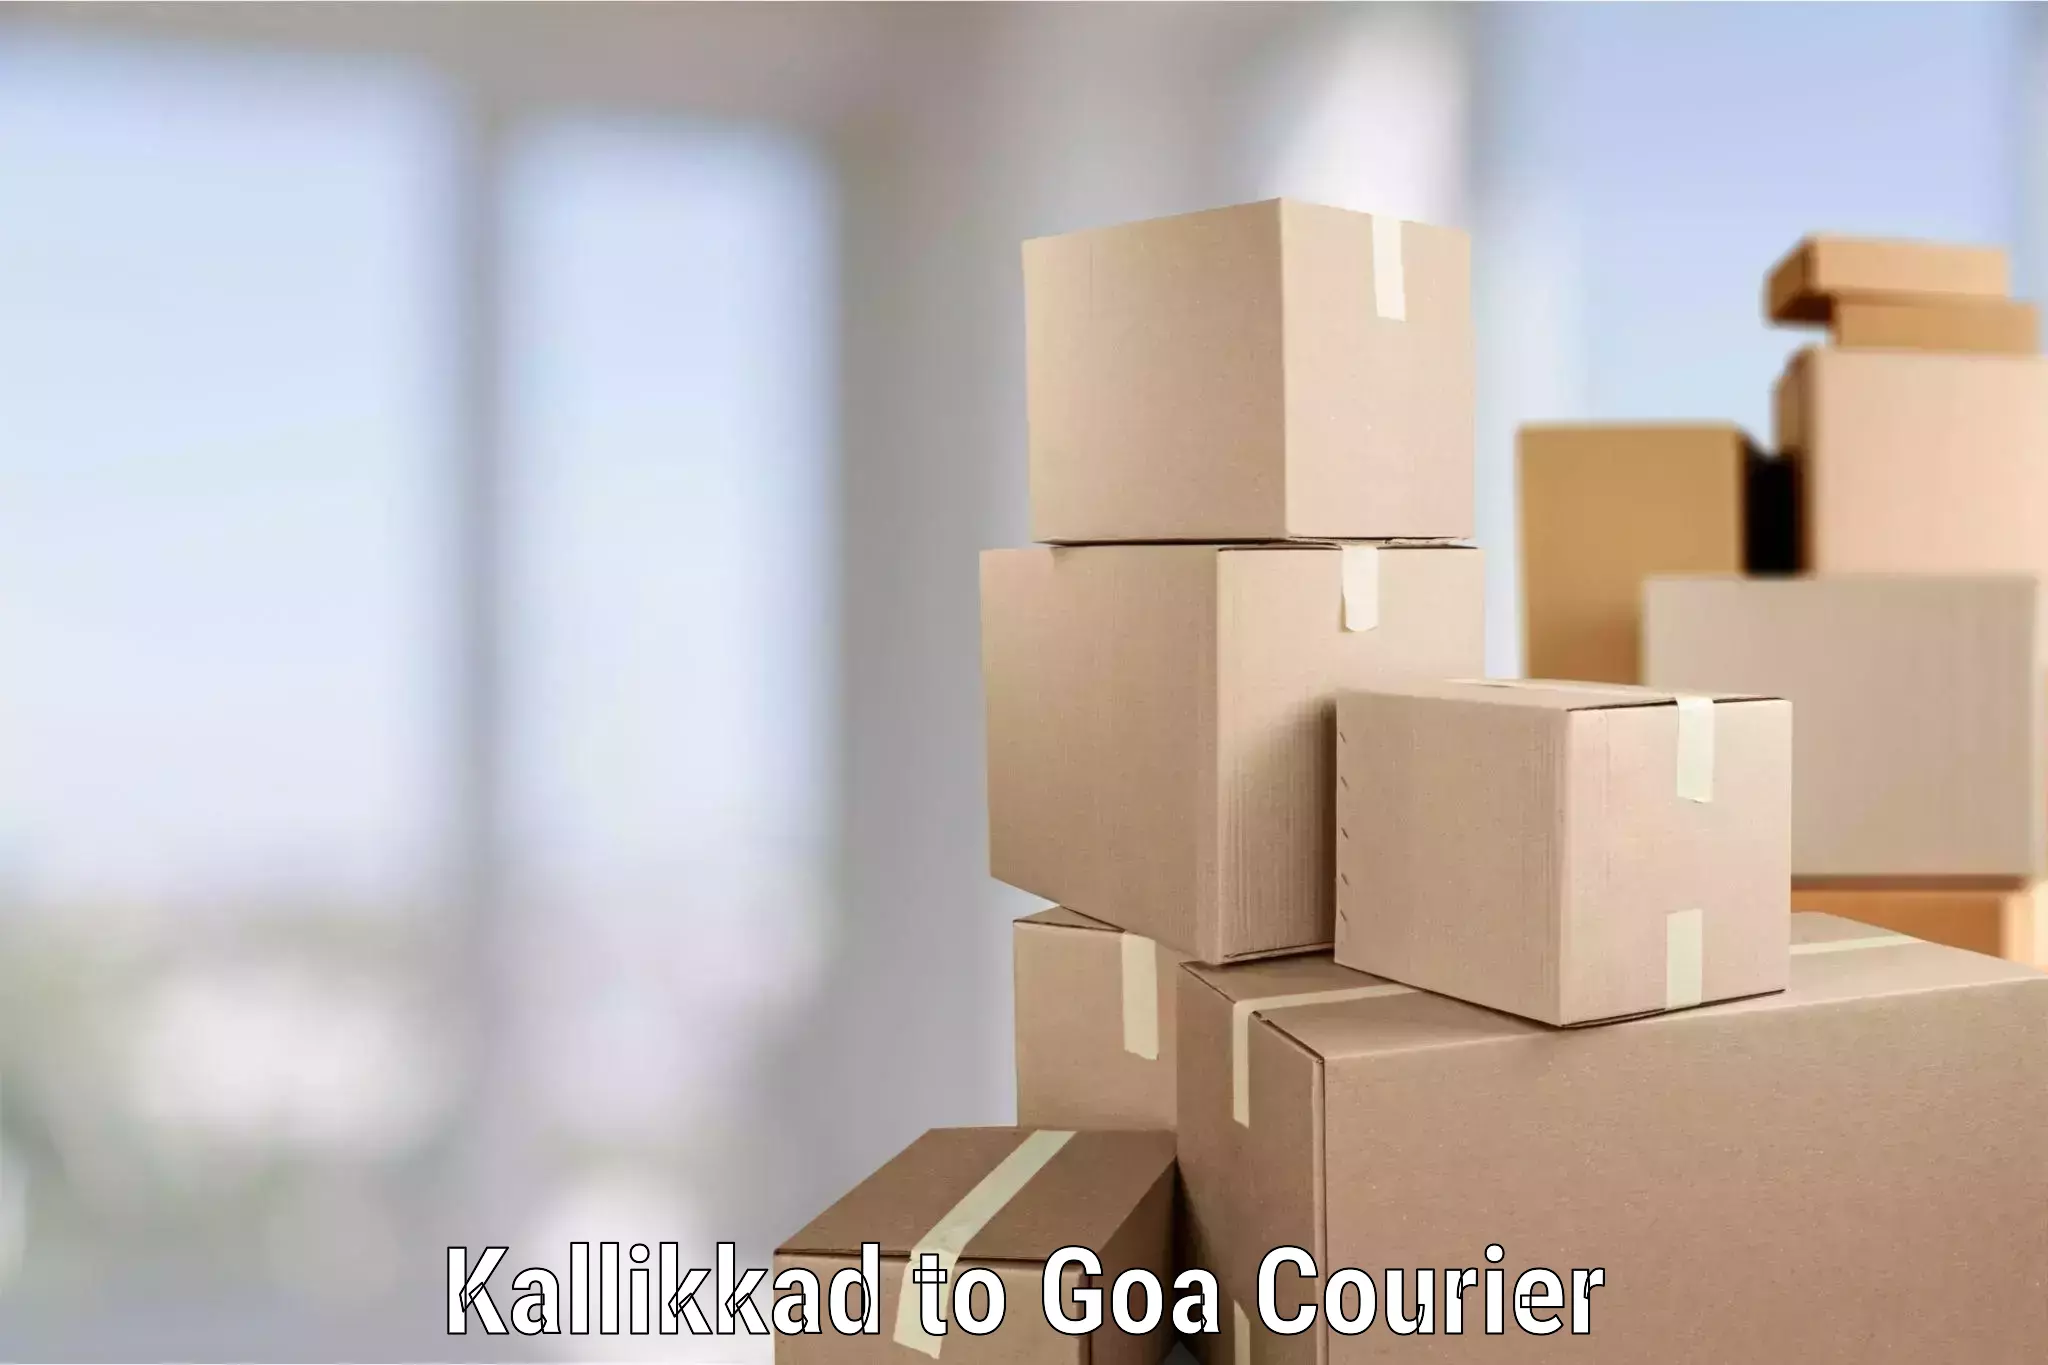 Dependable furniture transport Kallikkad to IIT Goa